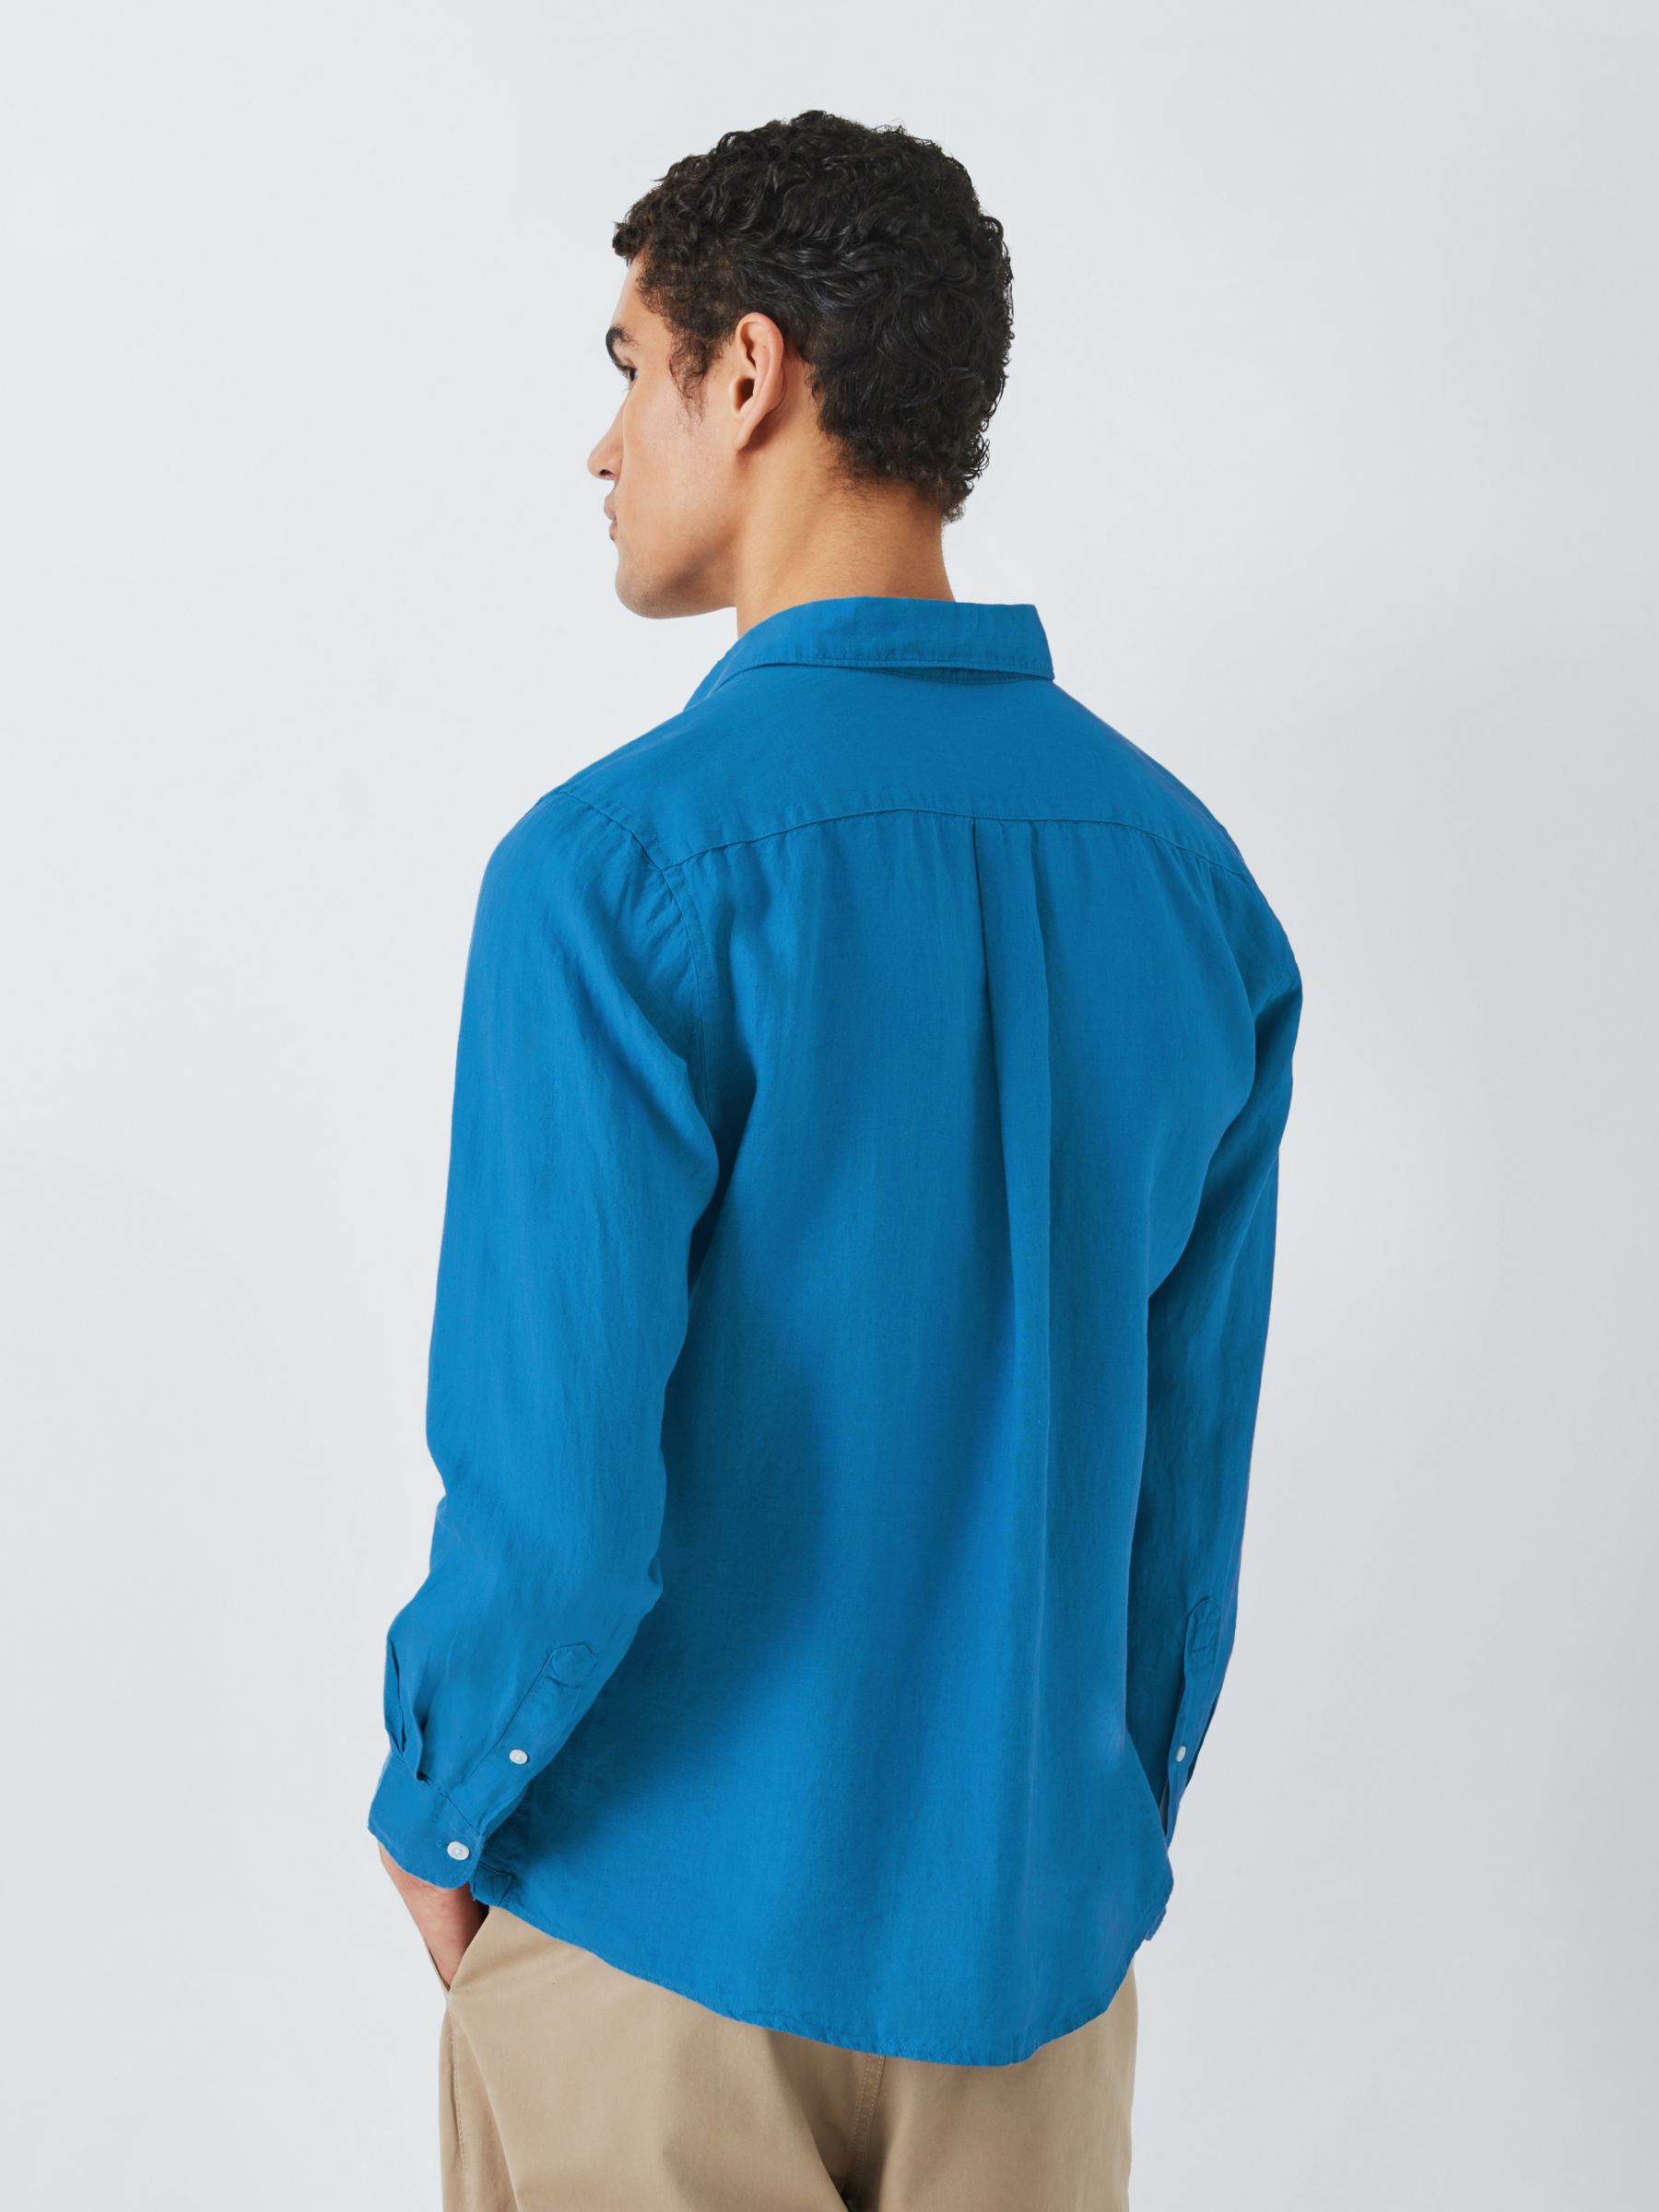 John Lewis Linen Long Sleeve Shirt, Parisian Blue, S